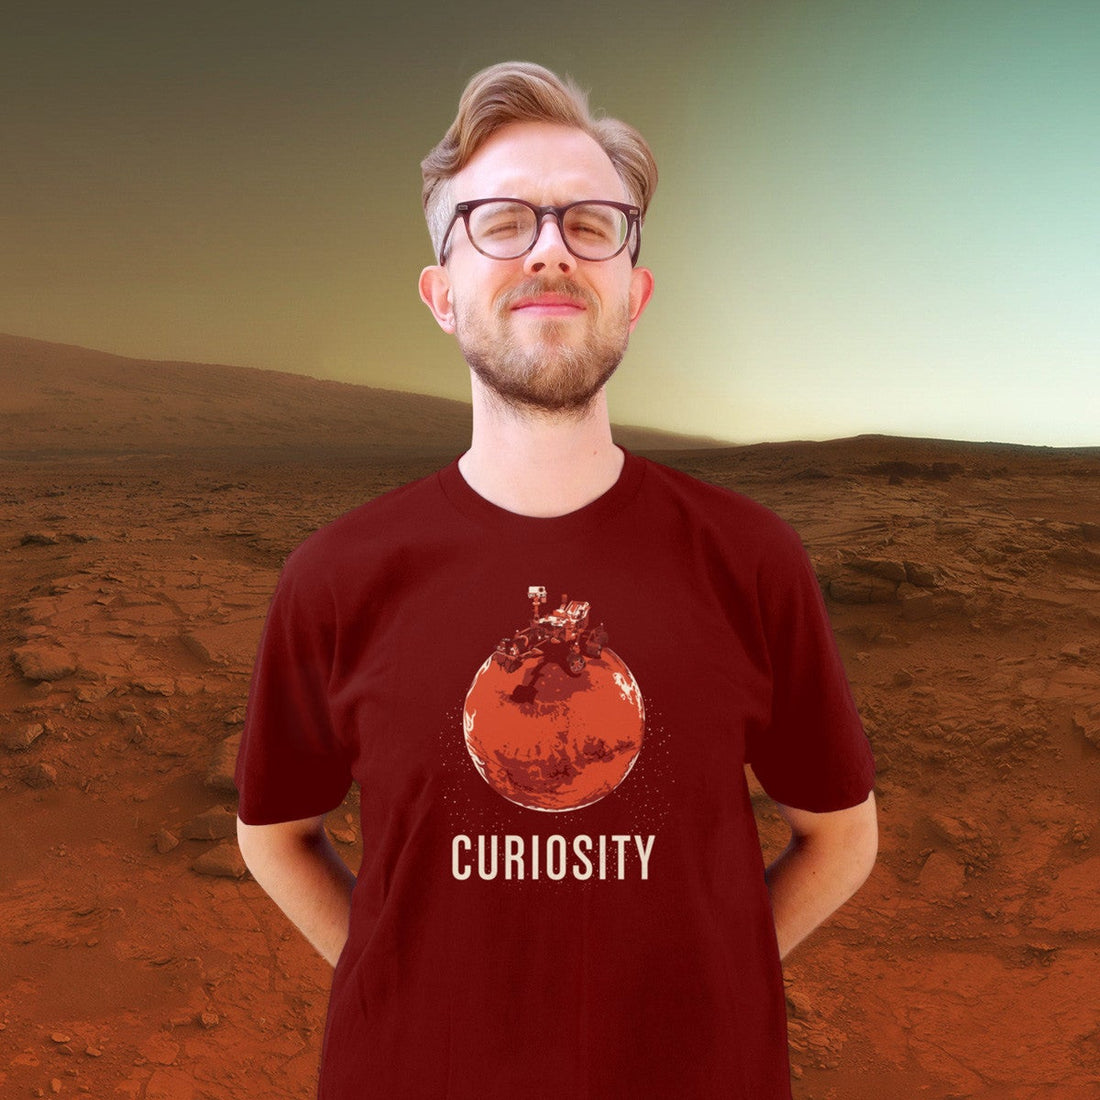 New Curiosity T-shirt